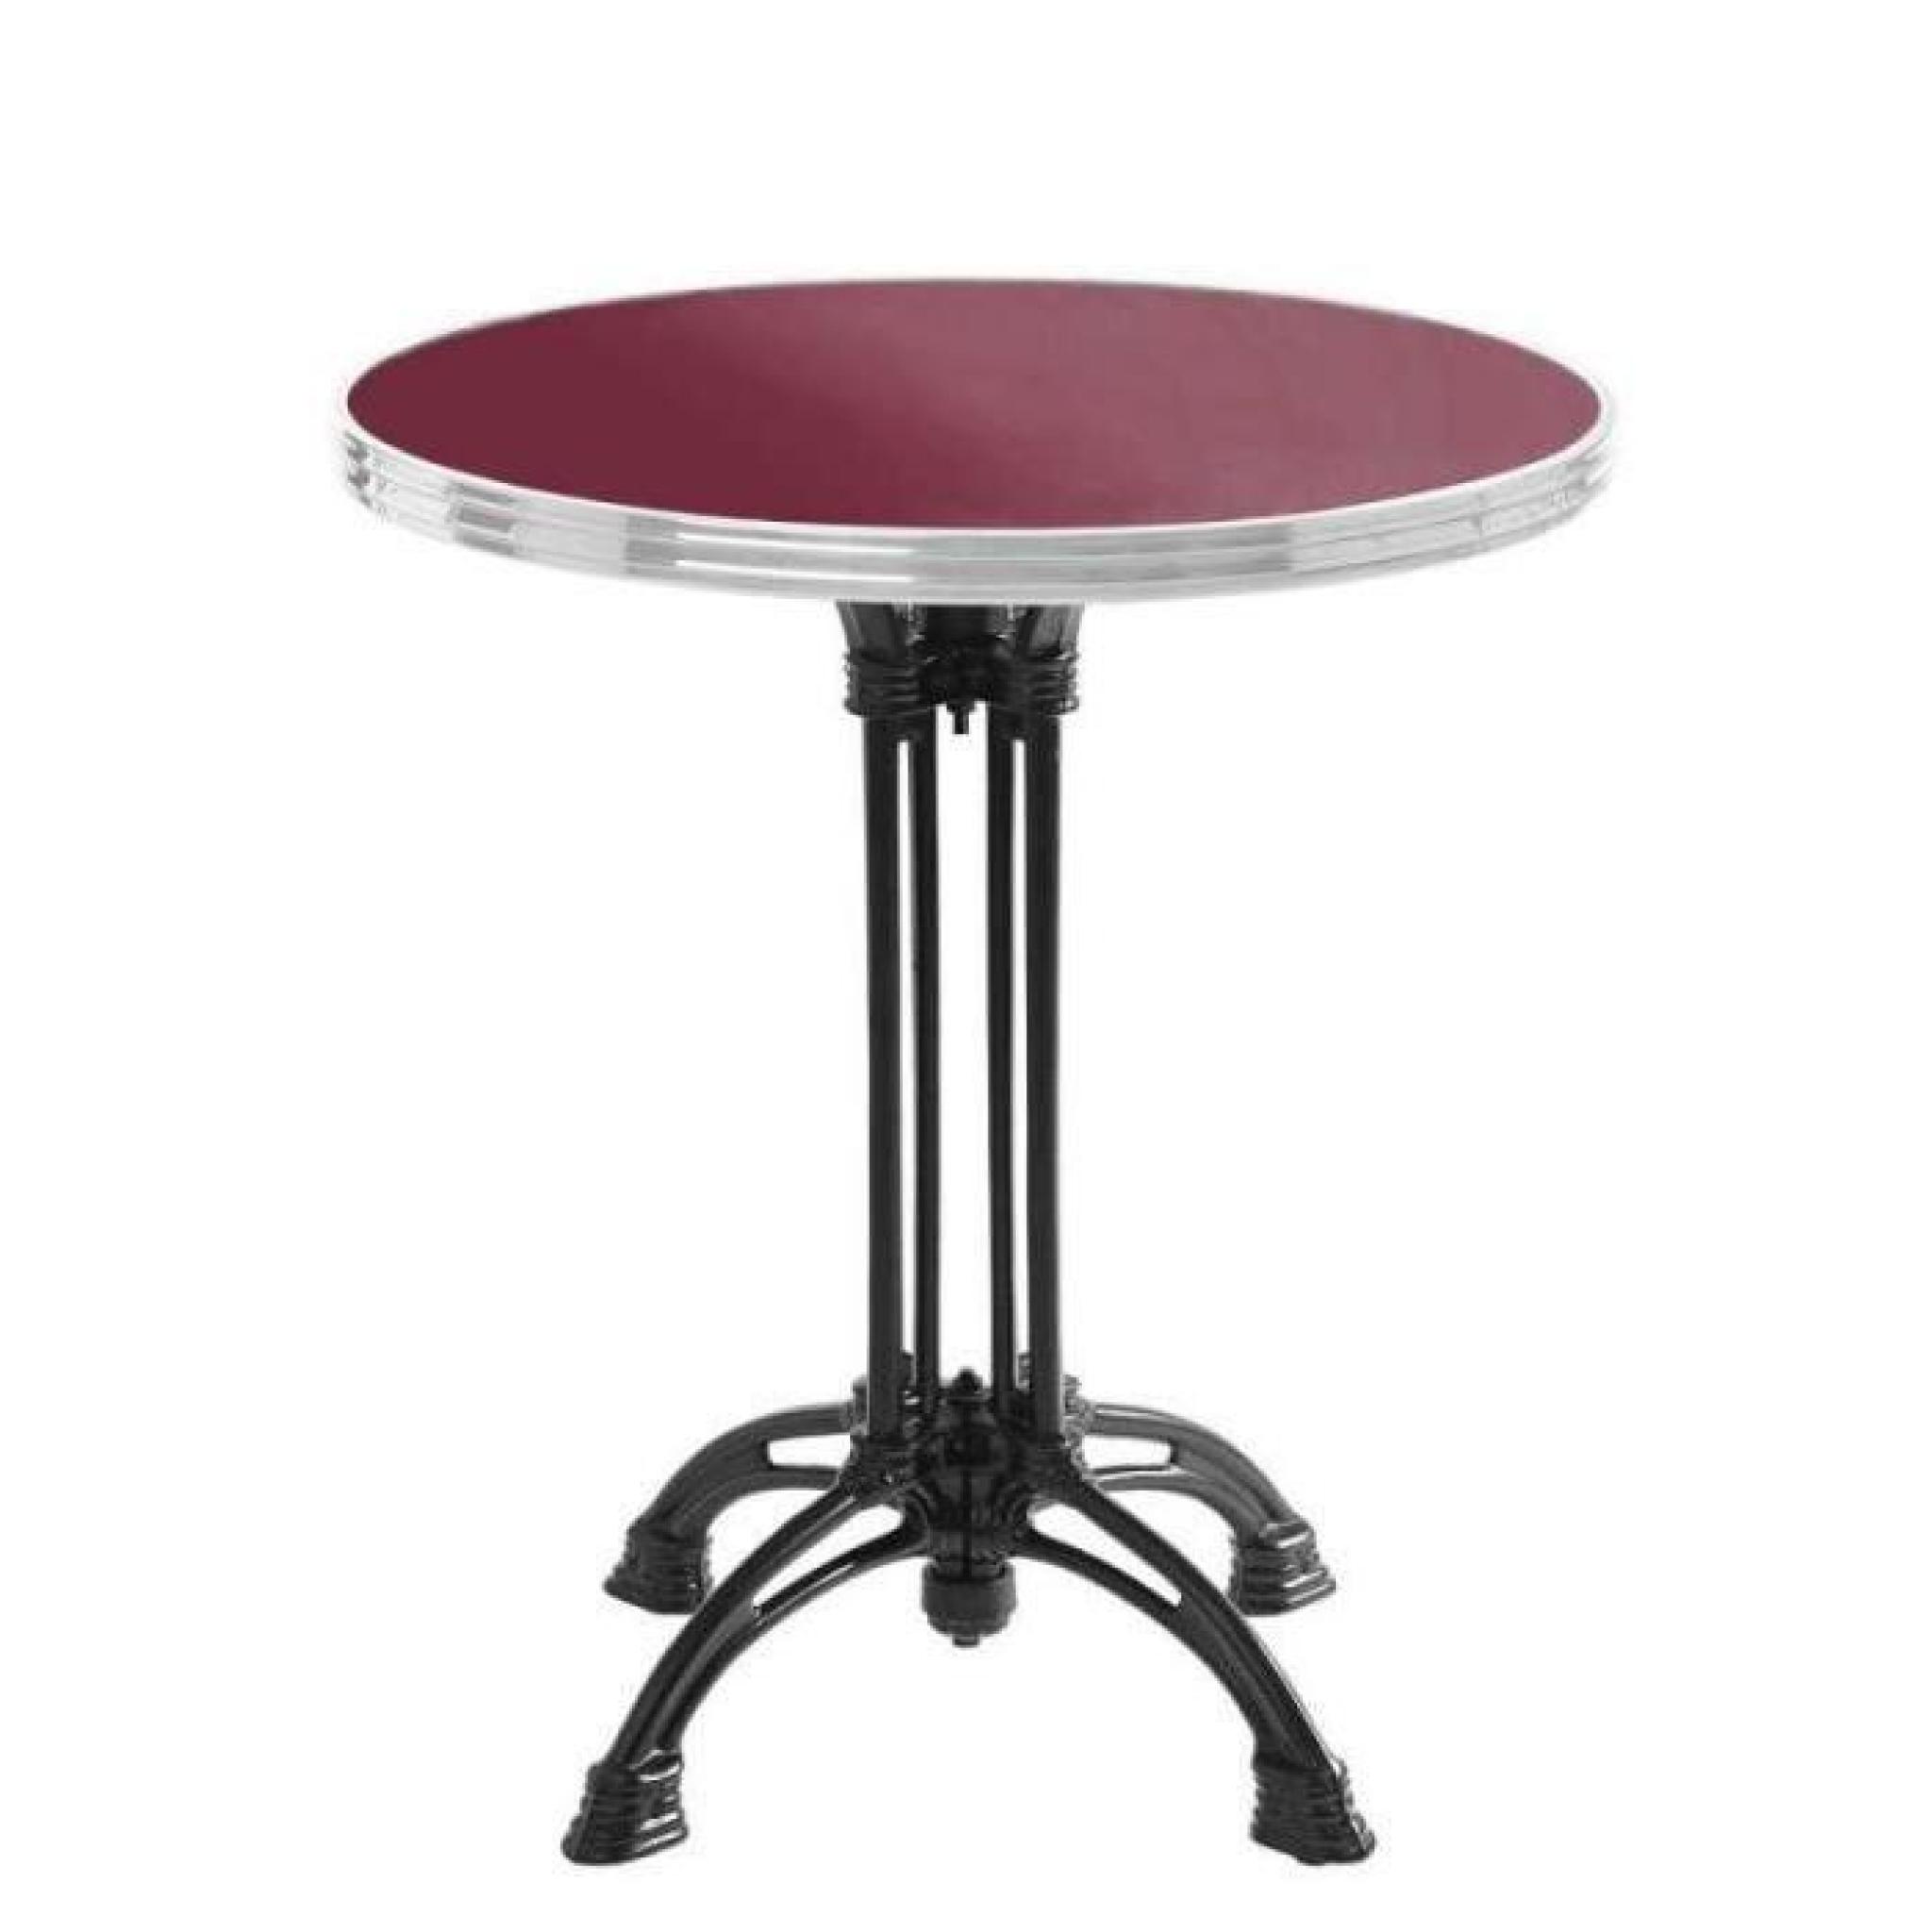 table bistrot ronde rouge avec cerclage en inox - pied 4 branches - h70 x d70 cm